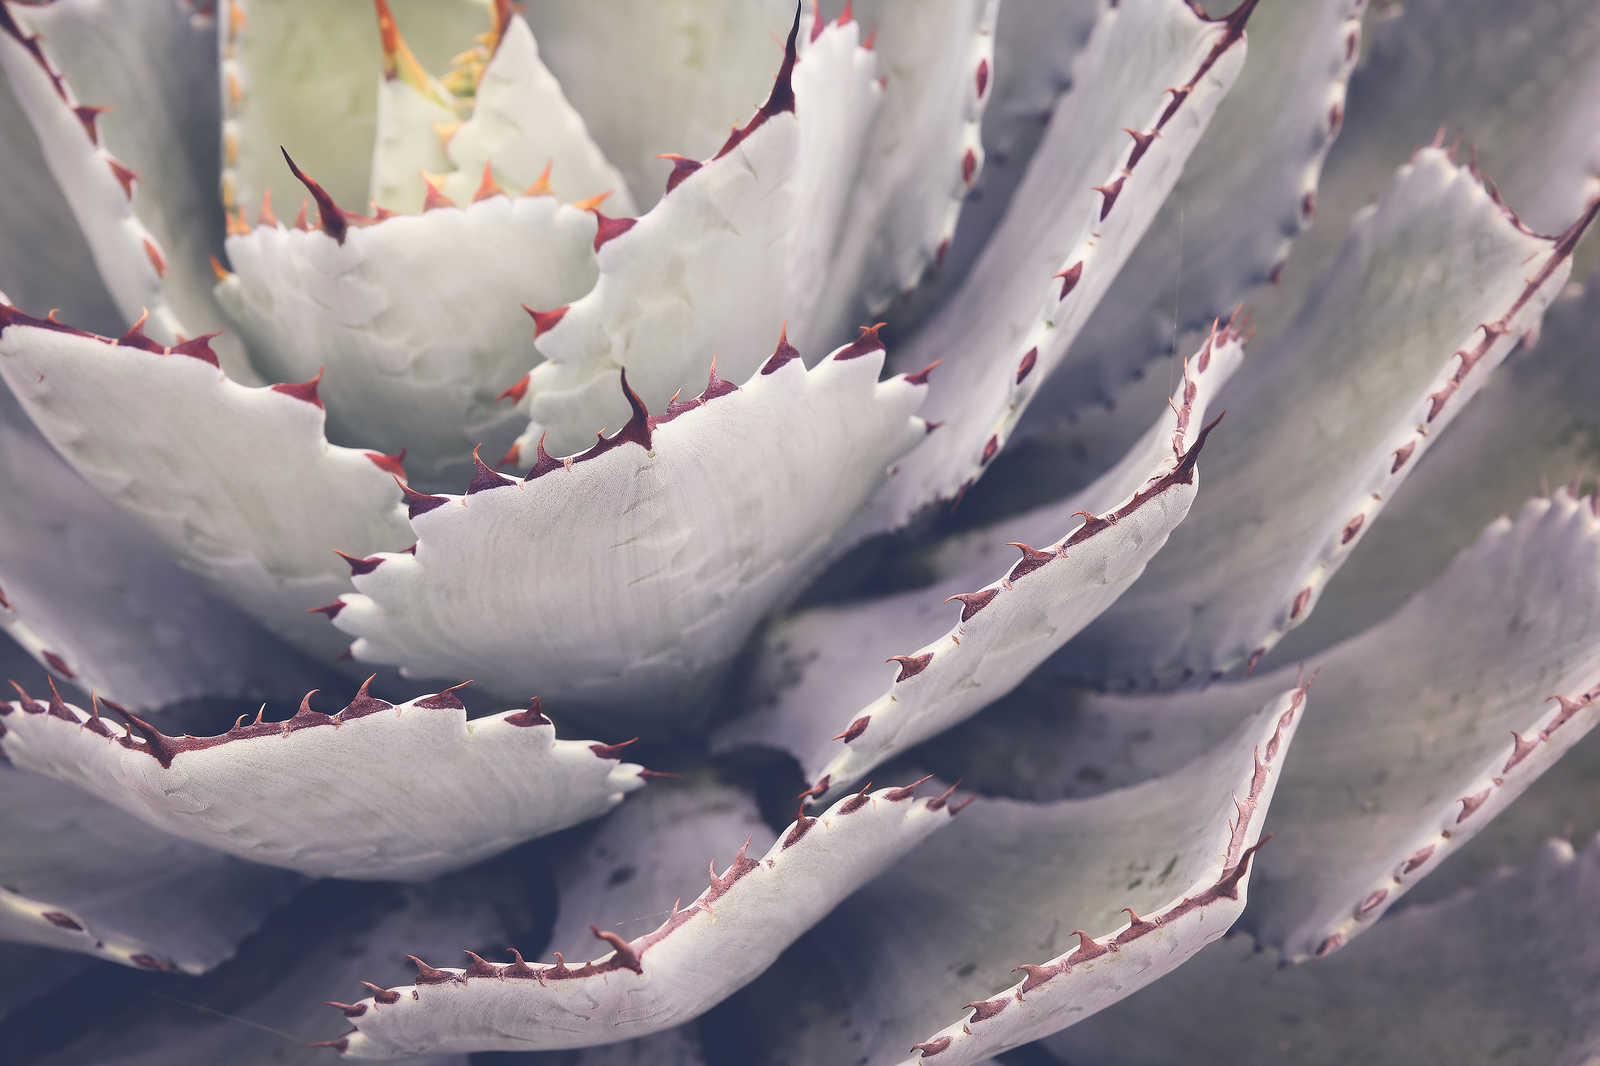             Leinwandbild mit Nahaufnahme von einem Kaktus – 0,90 m x 0,60 m
        